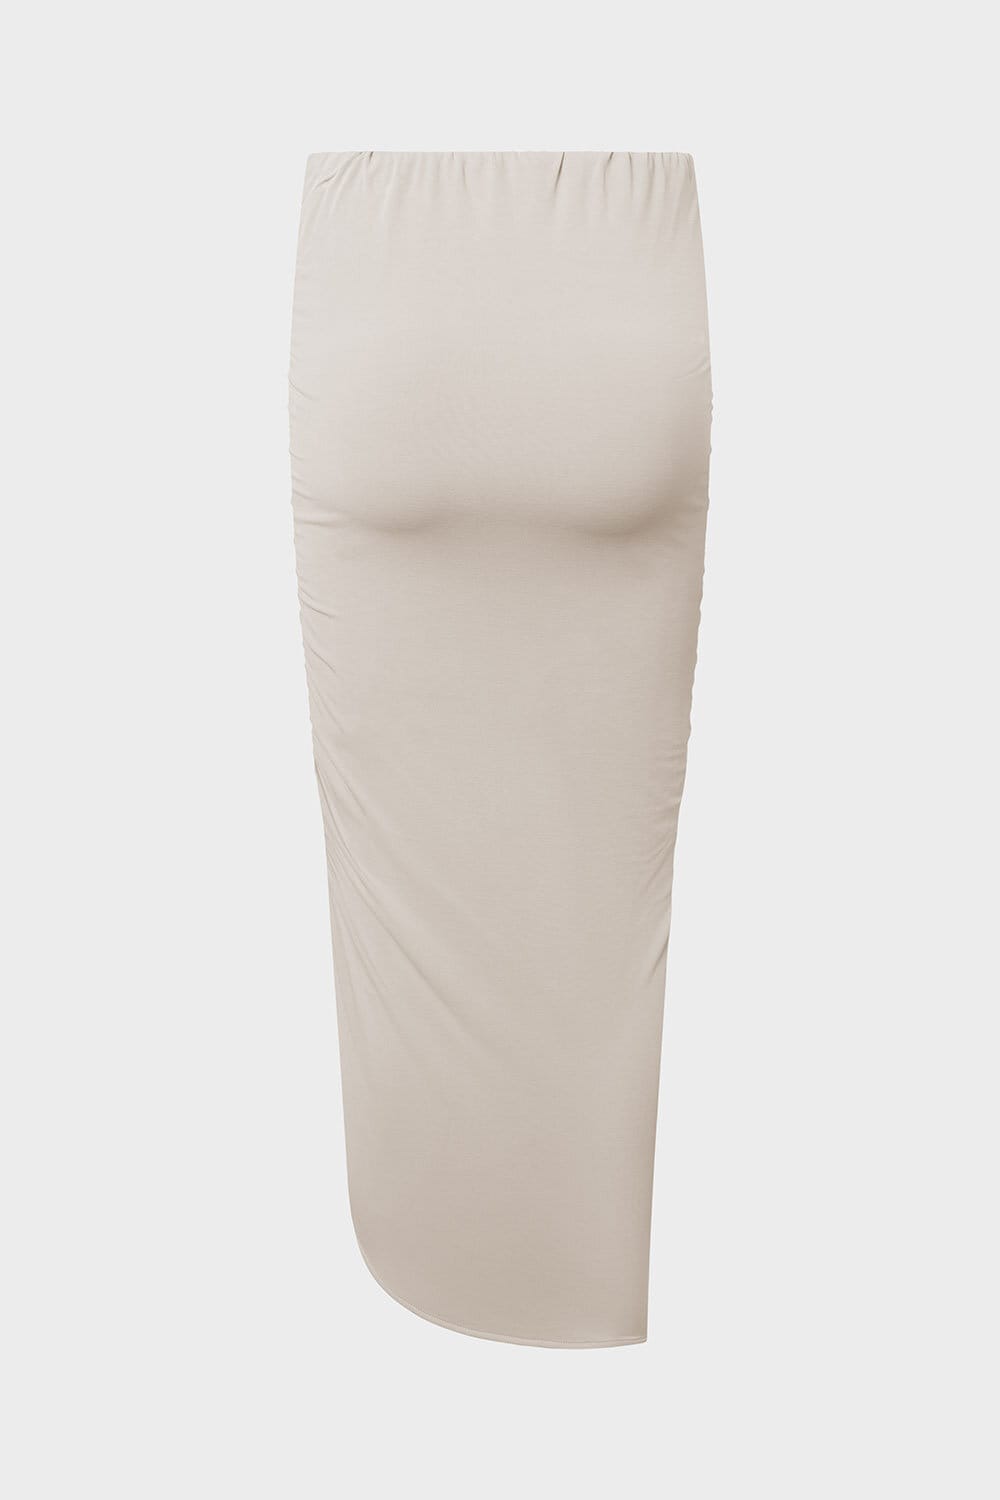 Wilhelmina Skirt